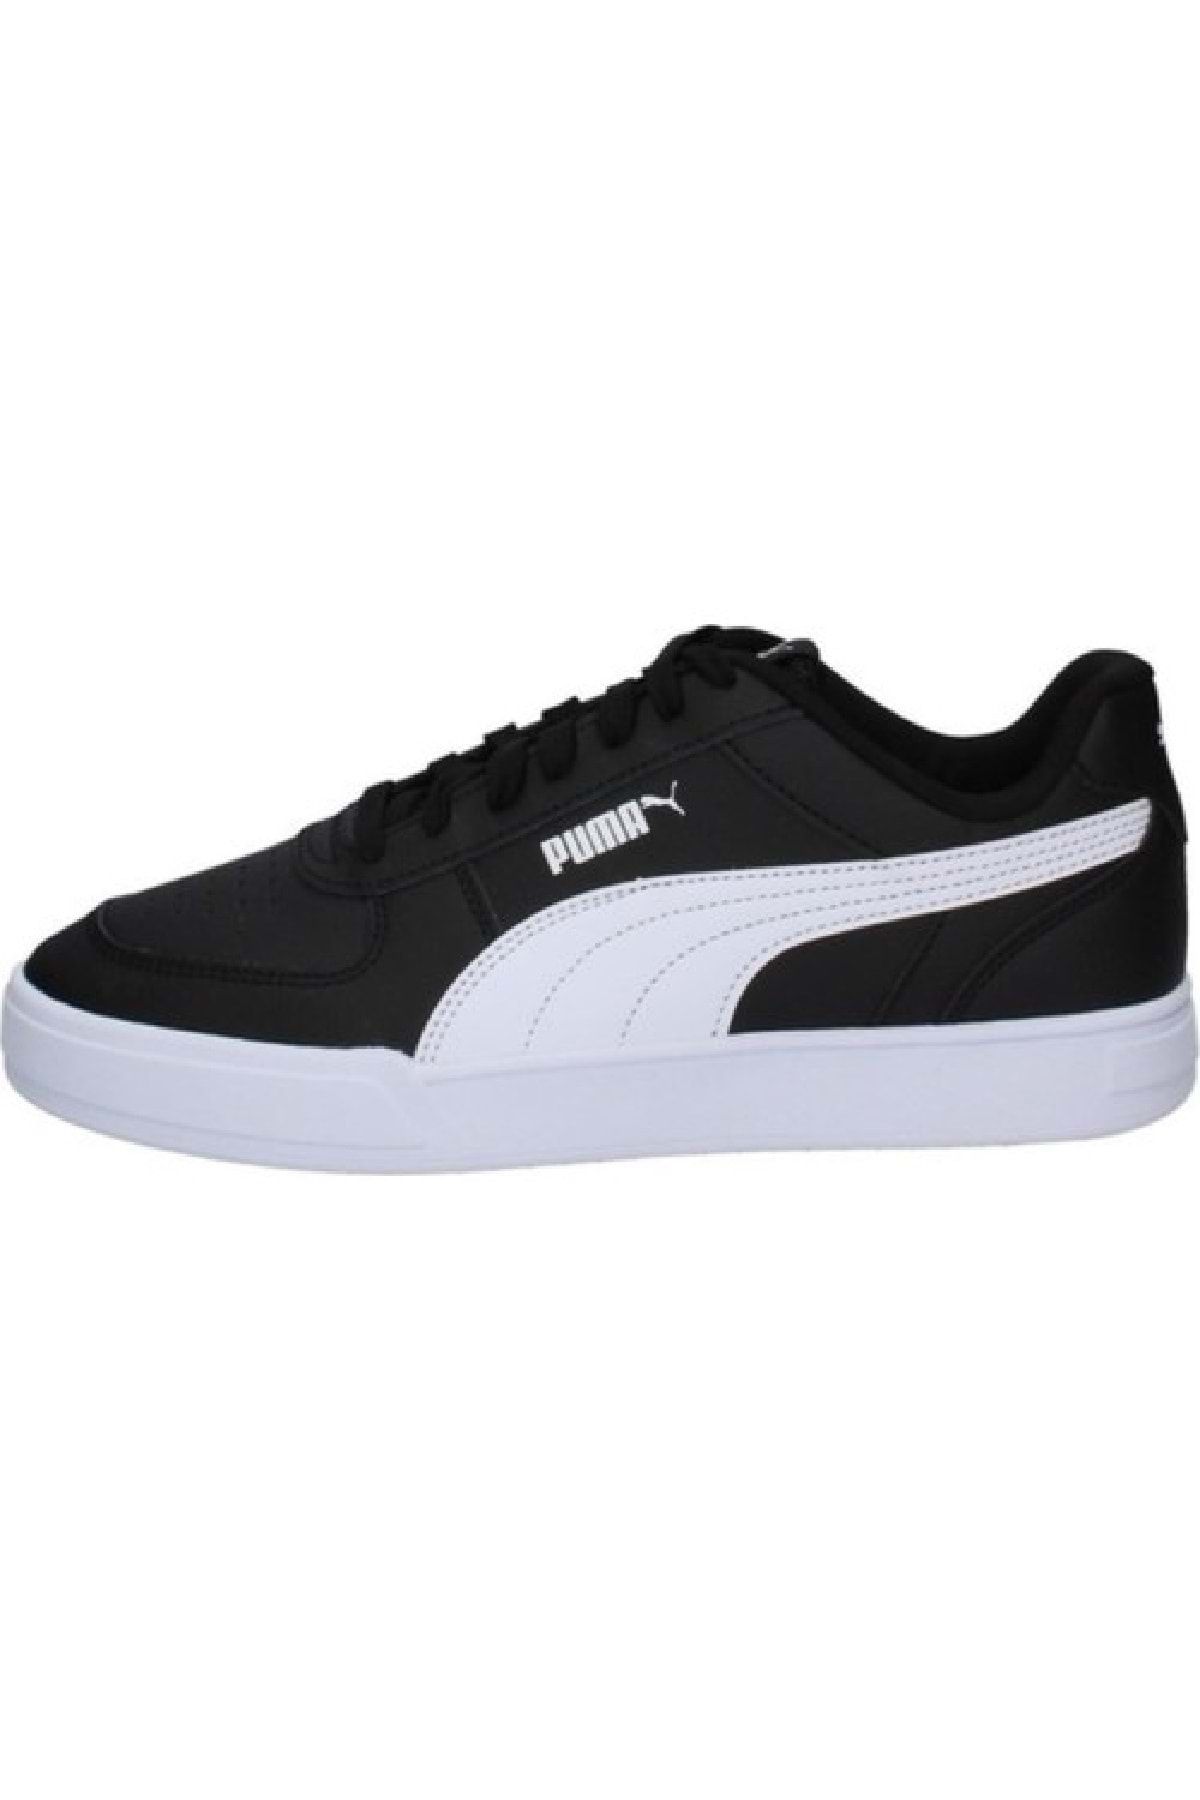 Puma 380810 04 Caven Siyah-beyaz Erkek Spor Ayakkabı